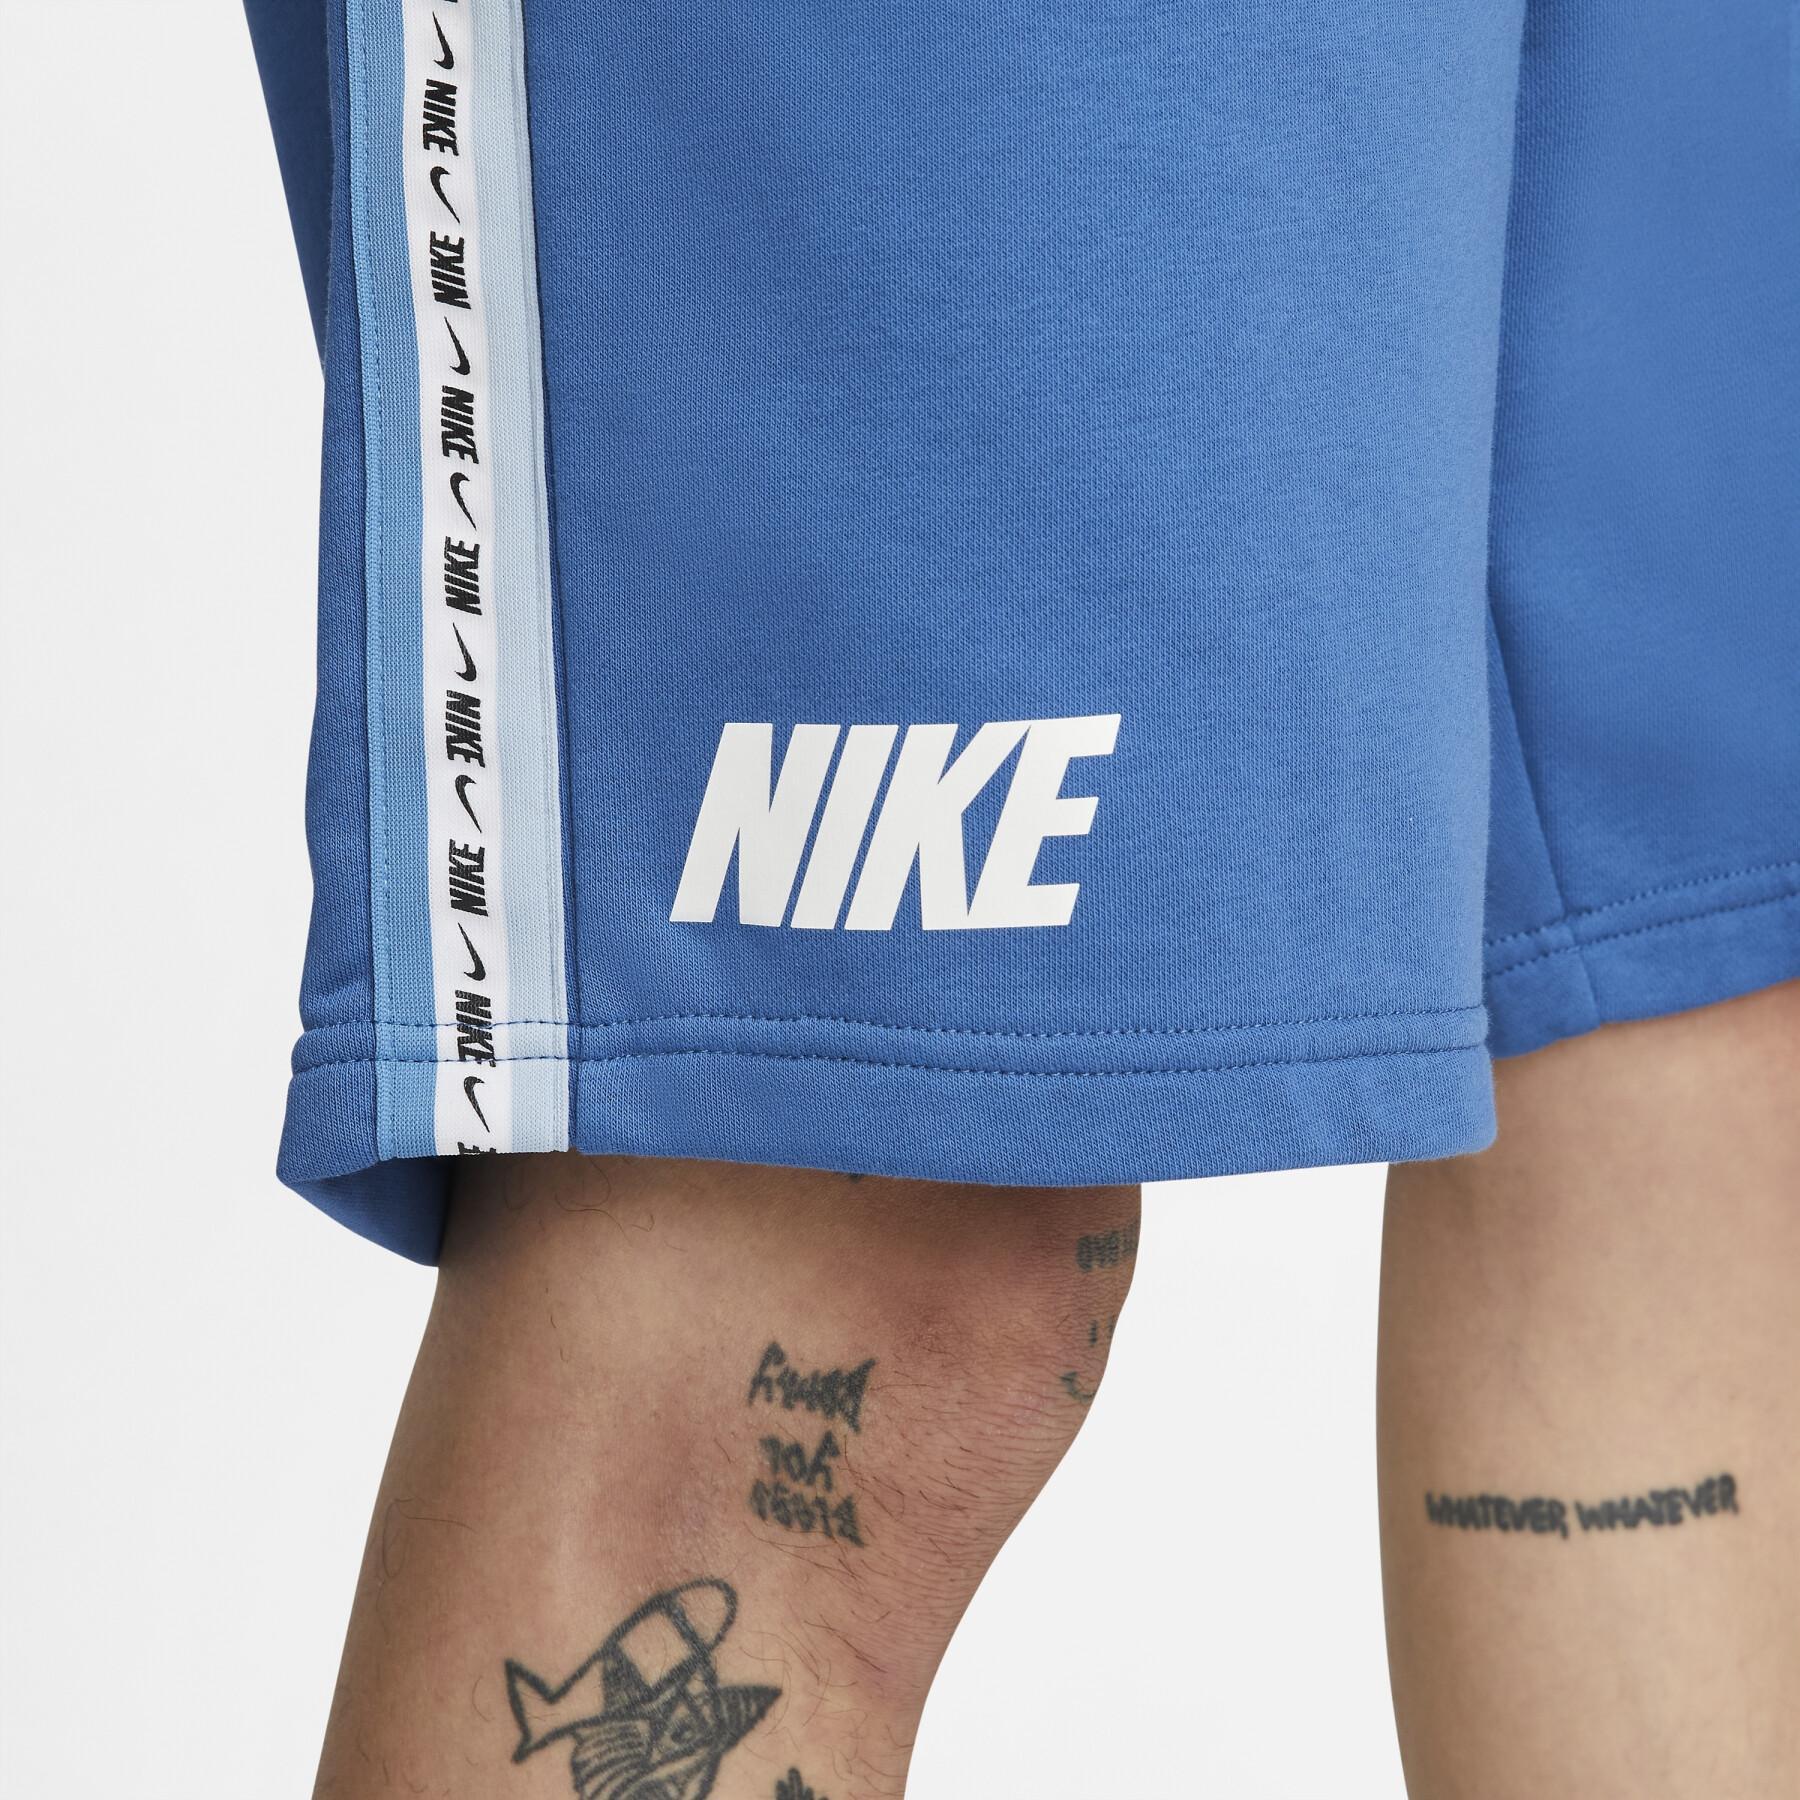 Shorts Nike